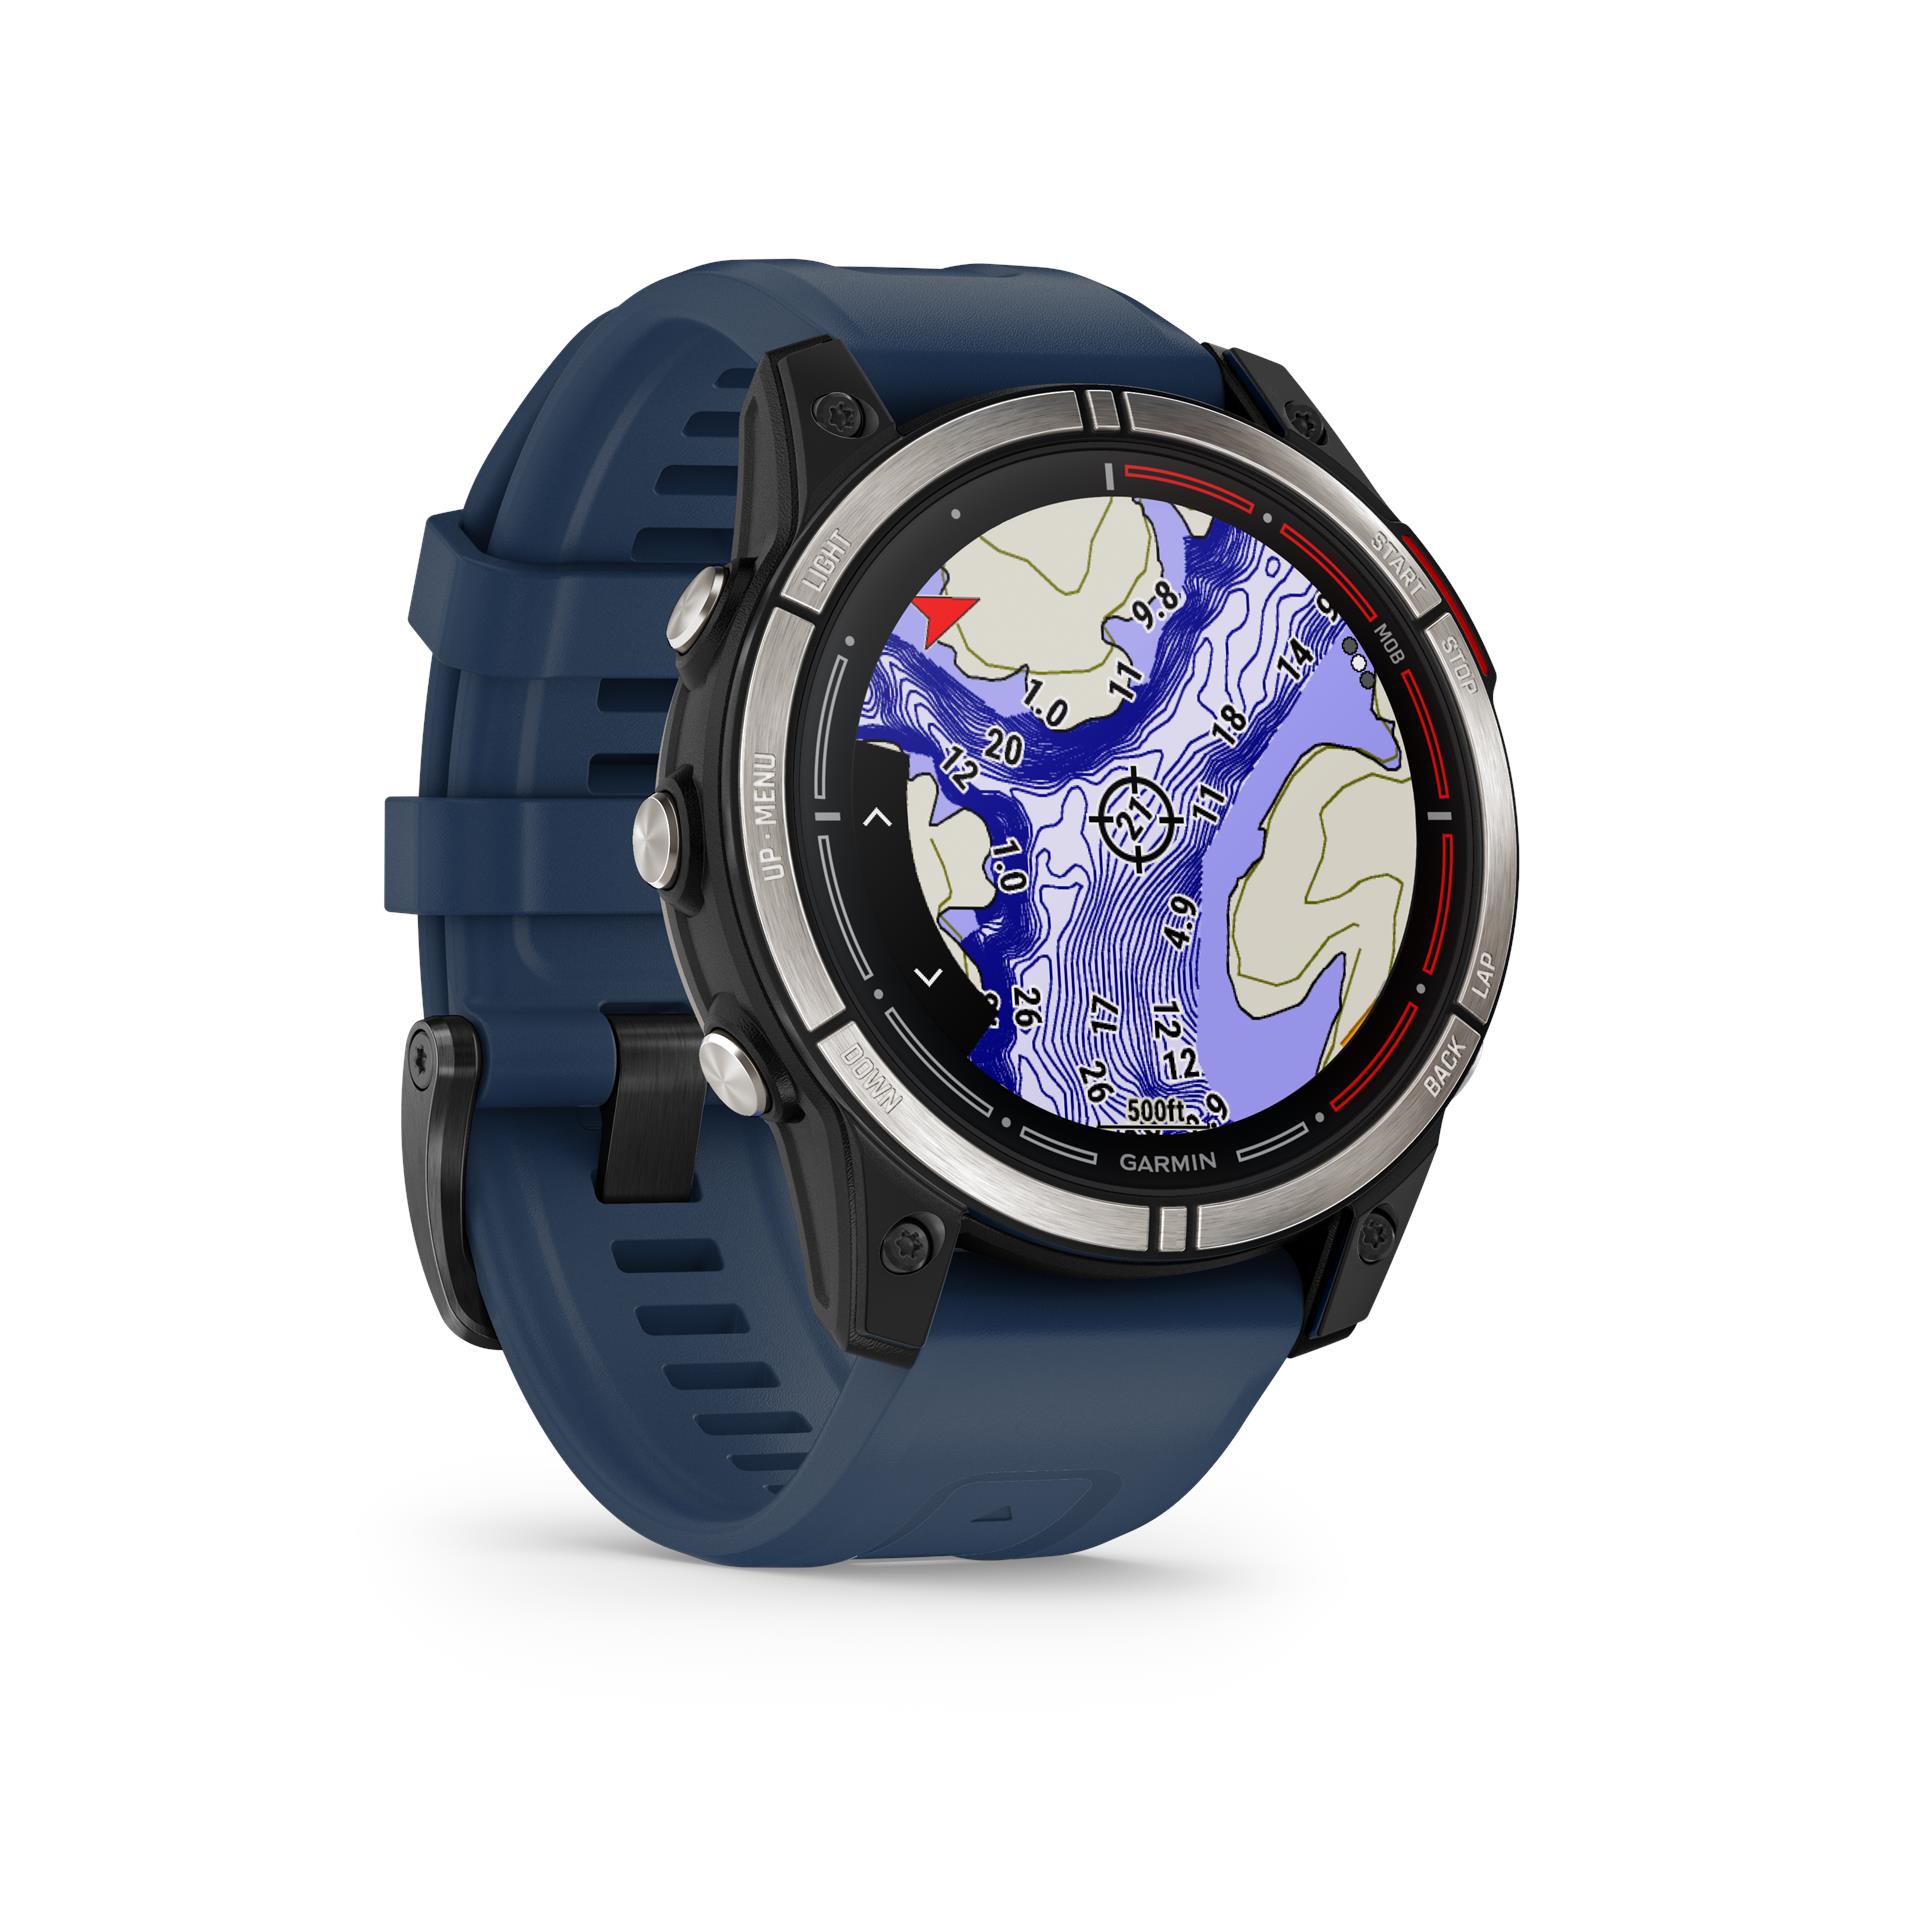 Garmin quatix 7 Sapphire Amoled išmanusis GPS laikrodis, 47 mm, tamsiai mėlynos spalvos